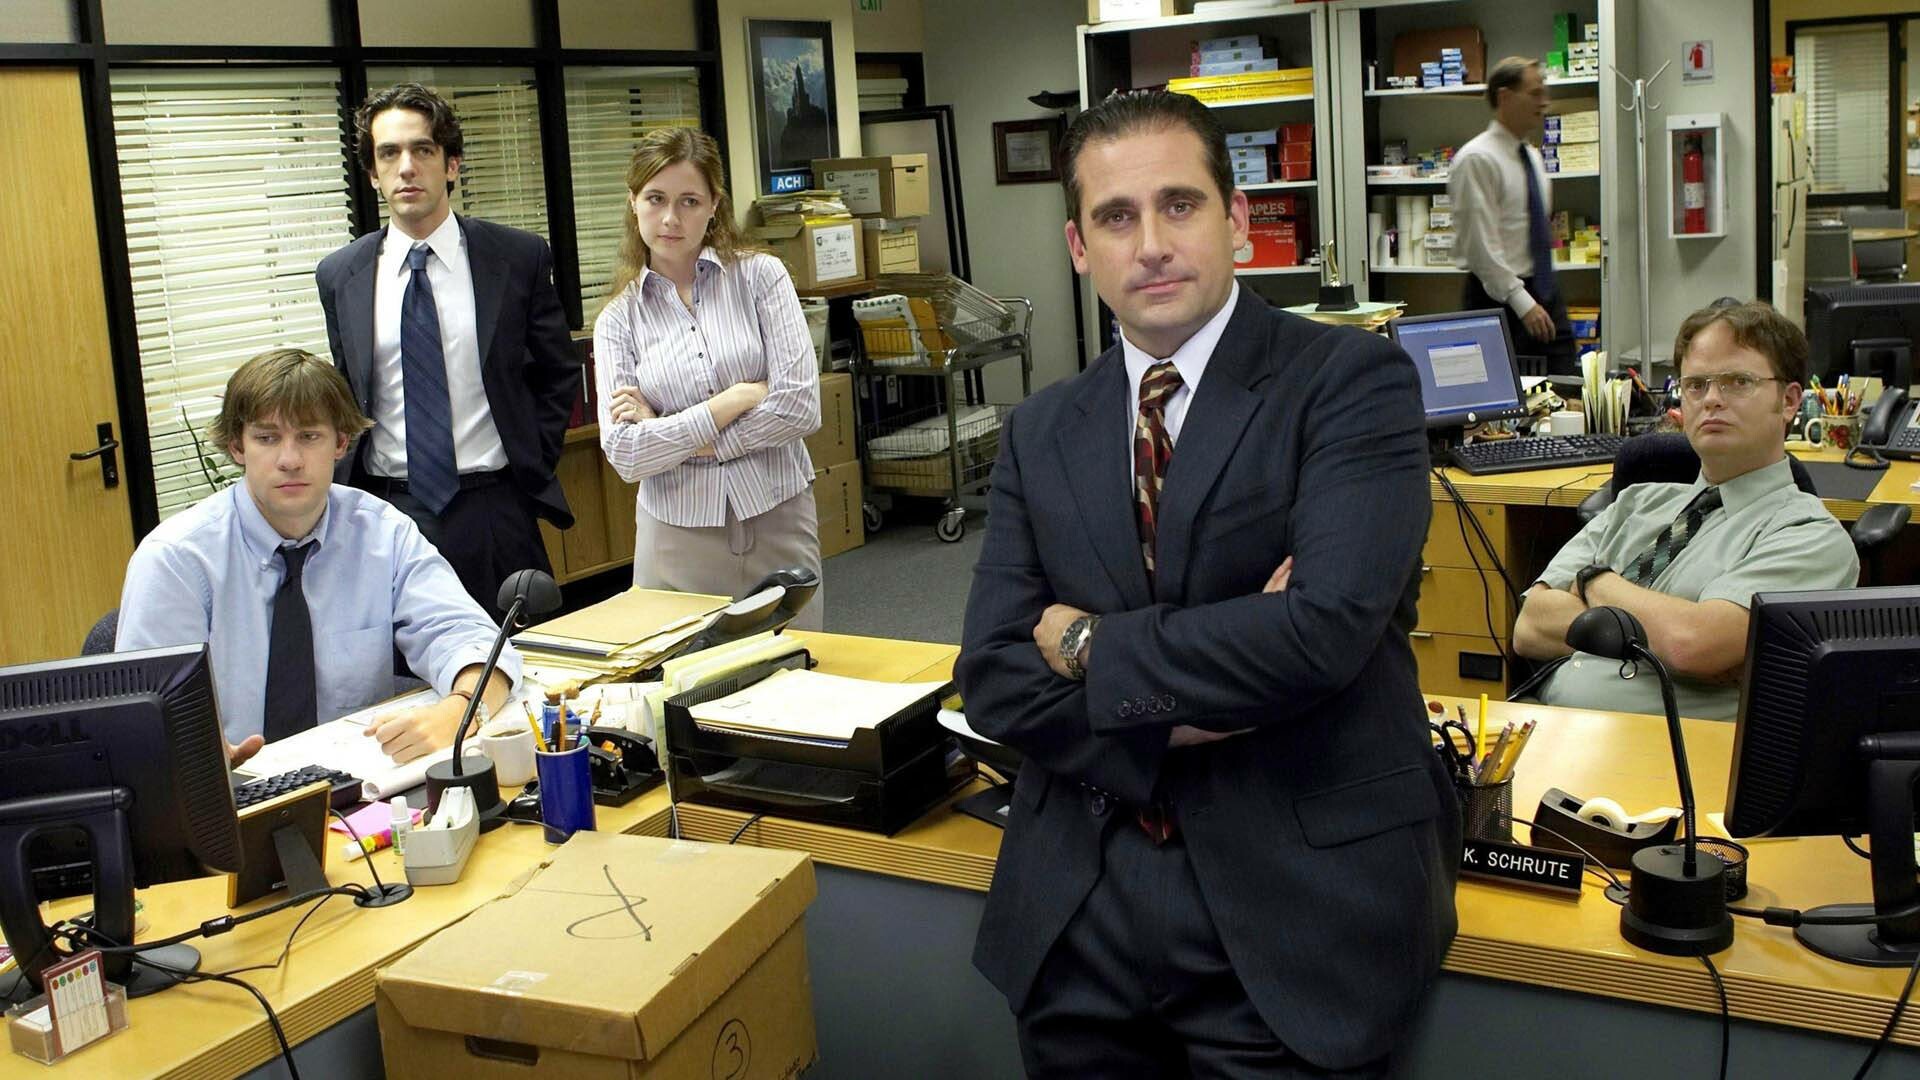 The Office (TV Series): Michael Scott, Dwight Schrute, Jim Halpert, Pam Beesly, Ryan Howard. 1920x1080 Full HD Wallpaper.